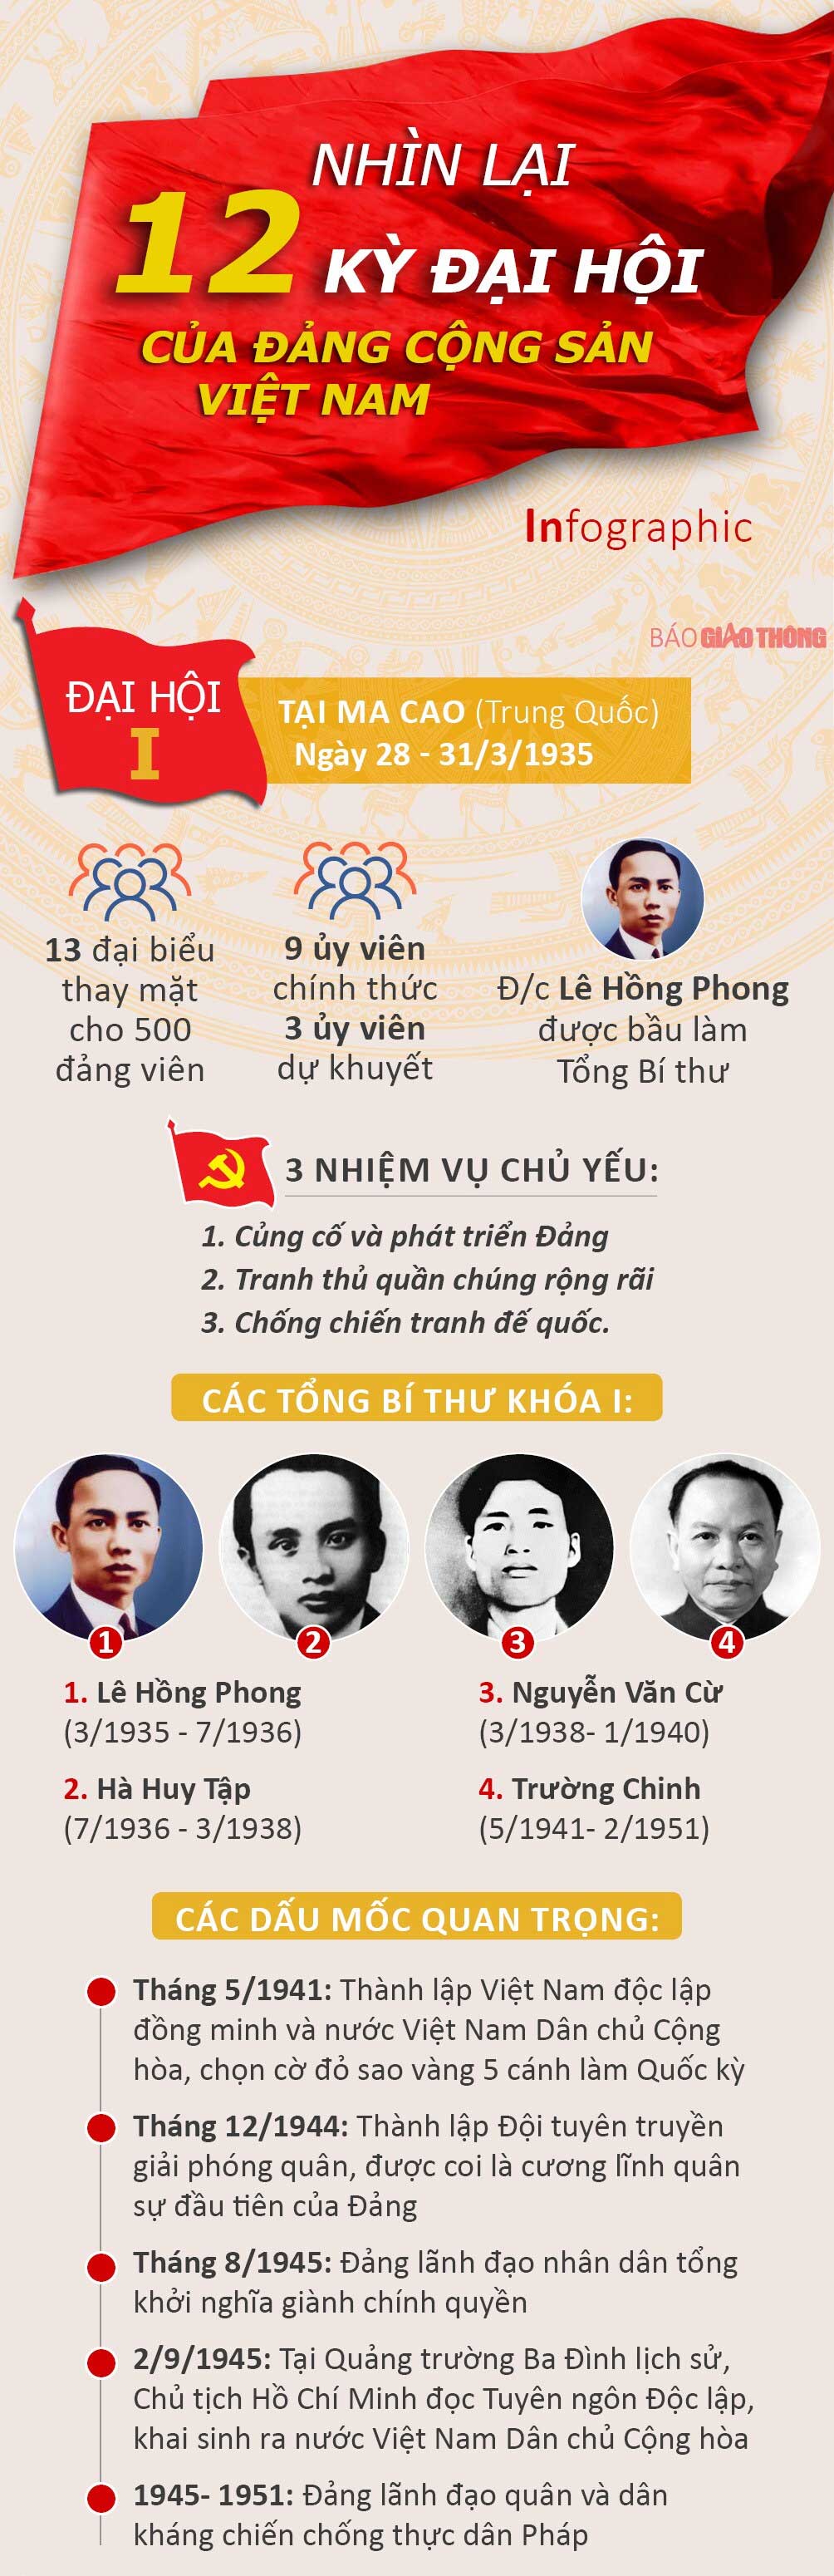 Nhìn lại 12 kỳ Đại hội của Đảng Cộng sản Việt Nam - 1